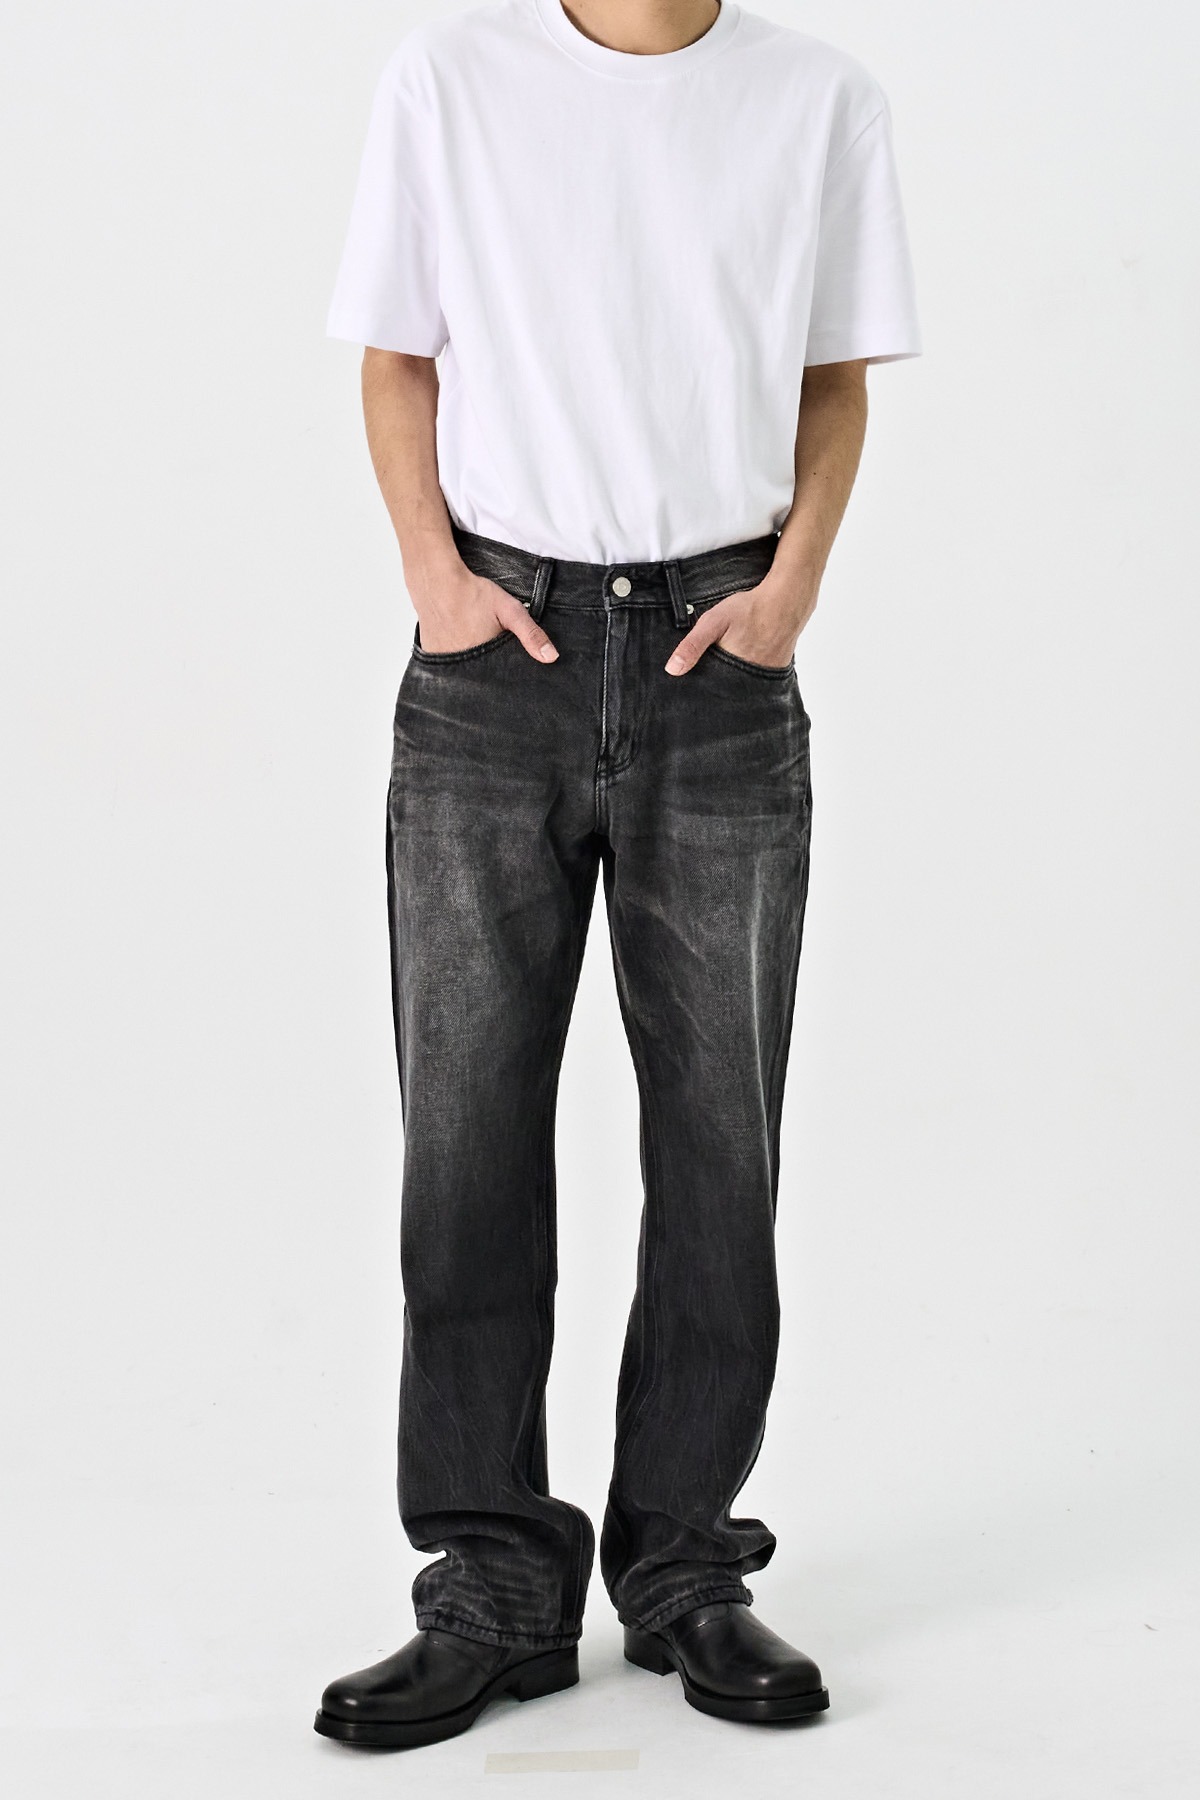 #0305 Vintage popliteus destoryed wide jeans